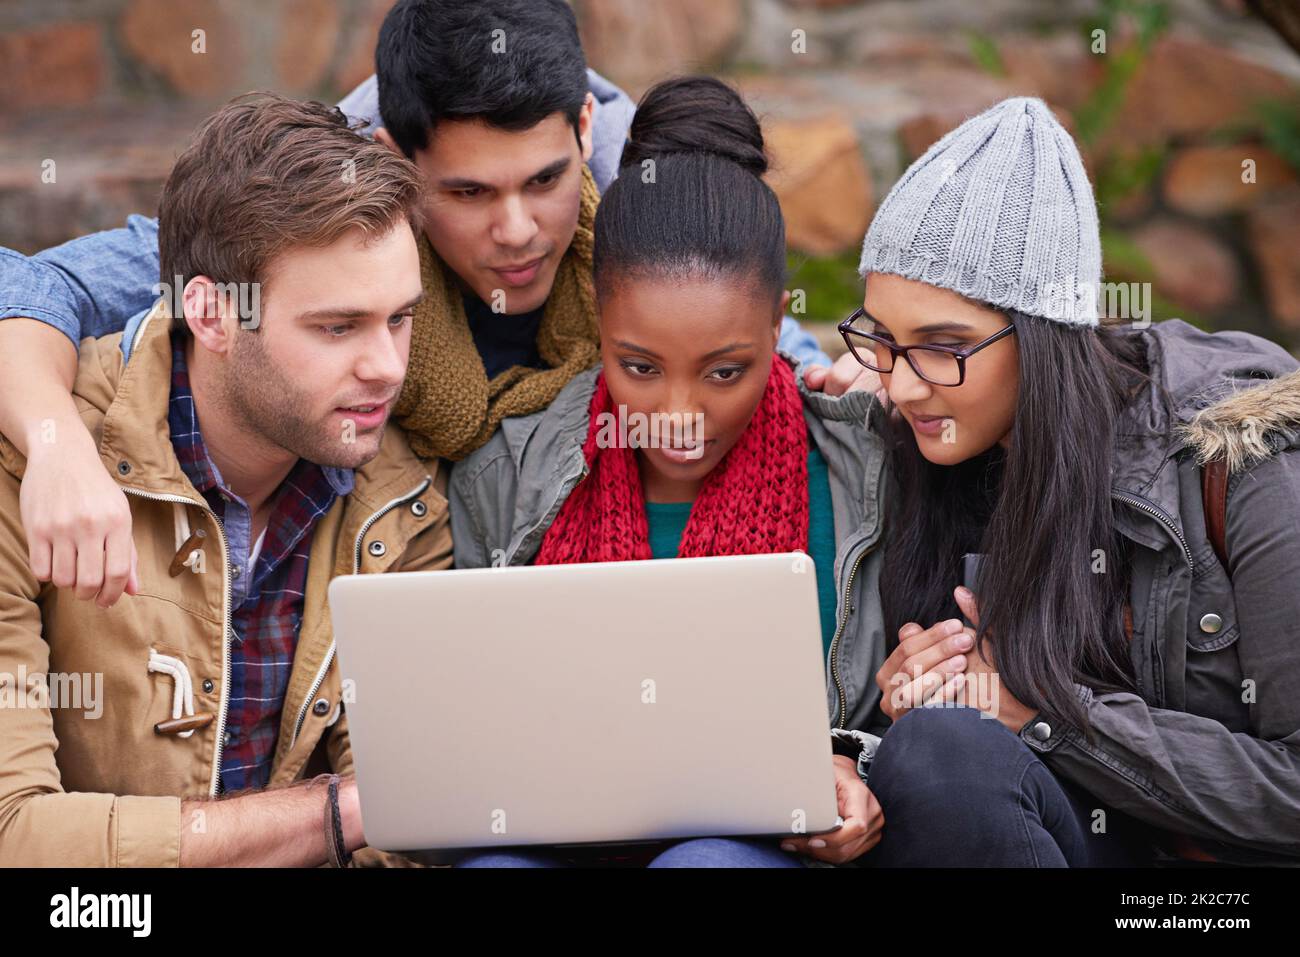 Amis et partenaires d'étude. Photo d'un groupe d'étudiants de l'université utilisant un ordinateur portable assis sur le campus. Banque D'Images